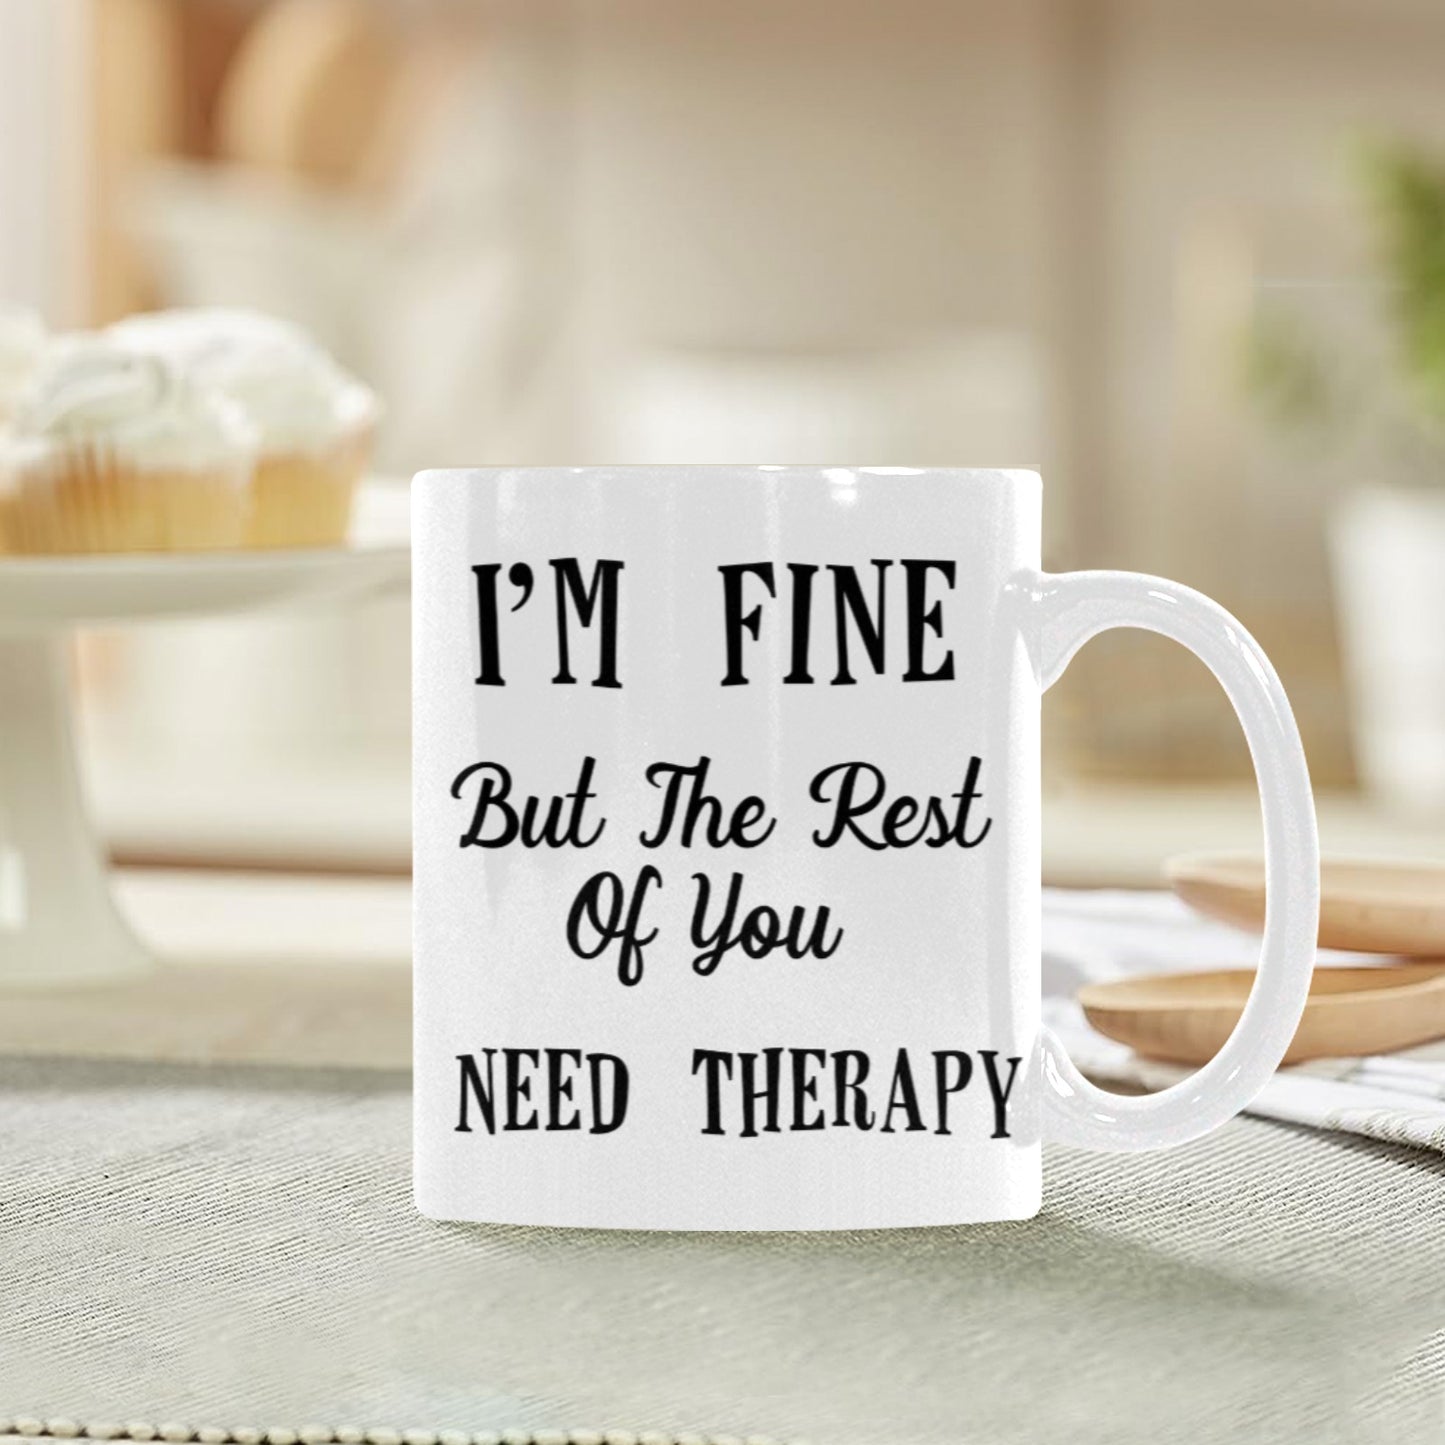 You Need Therapy Mug